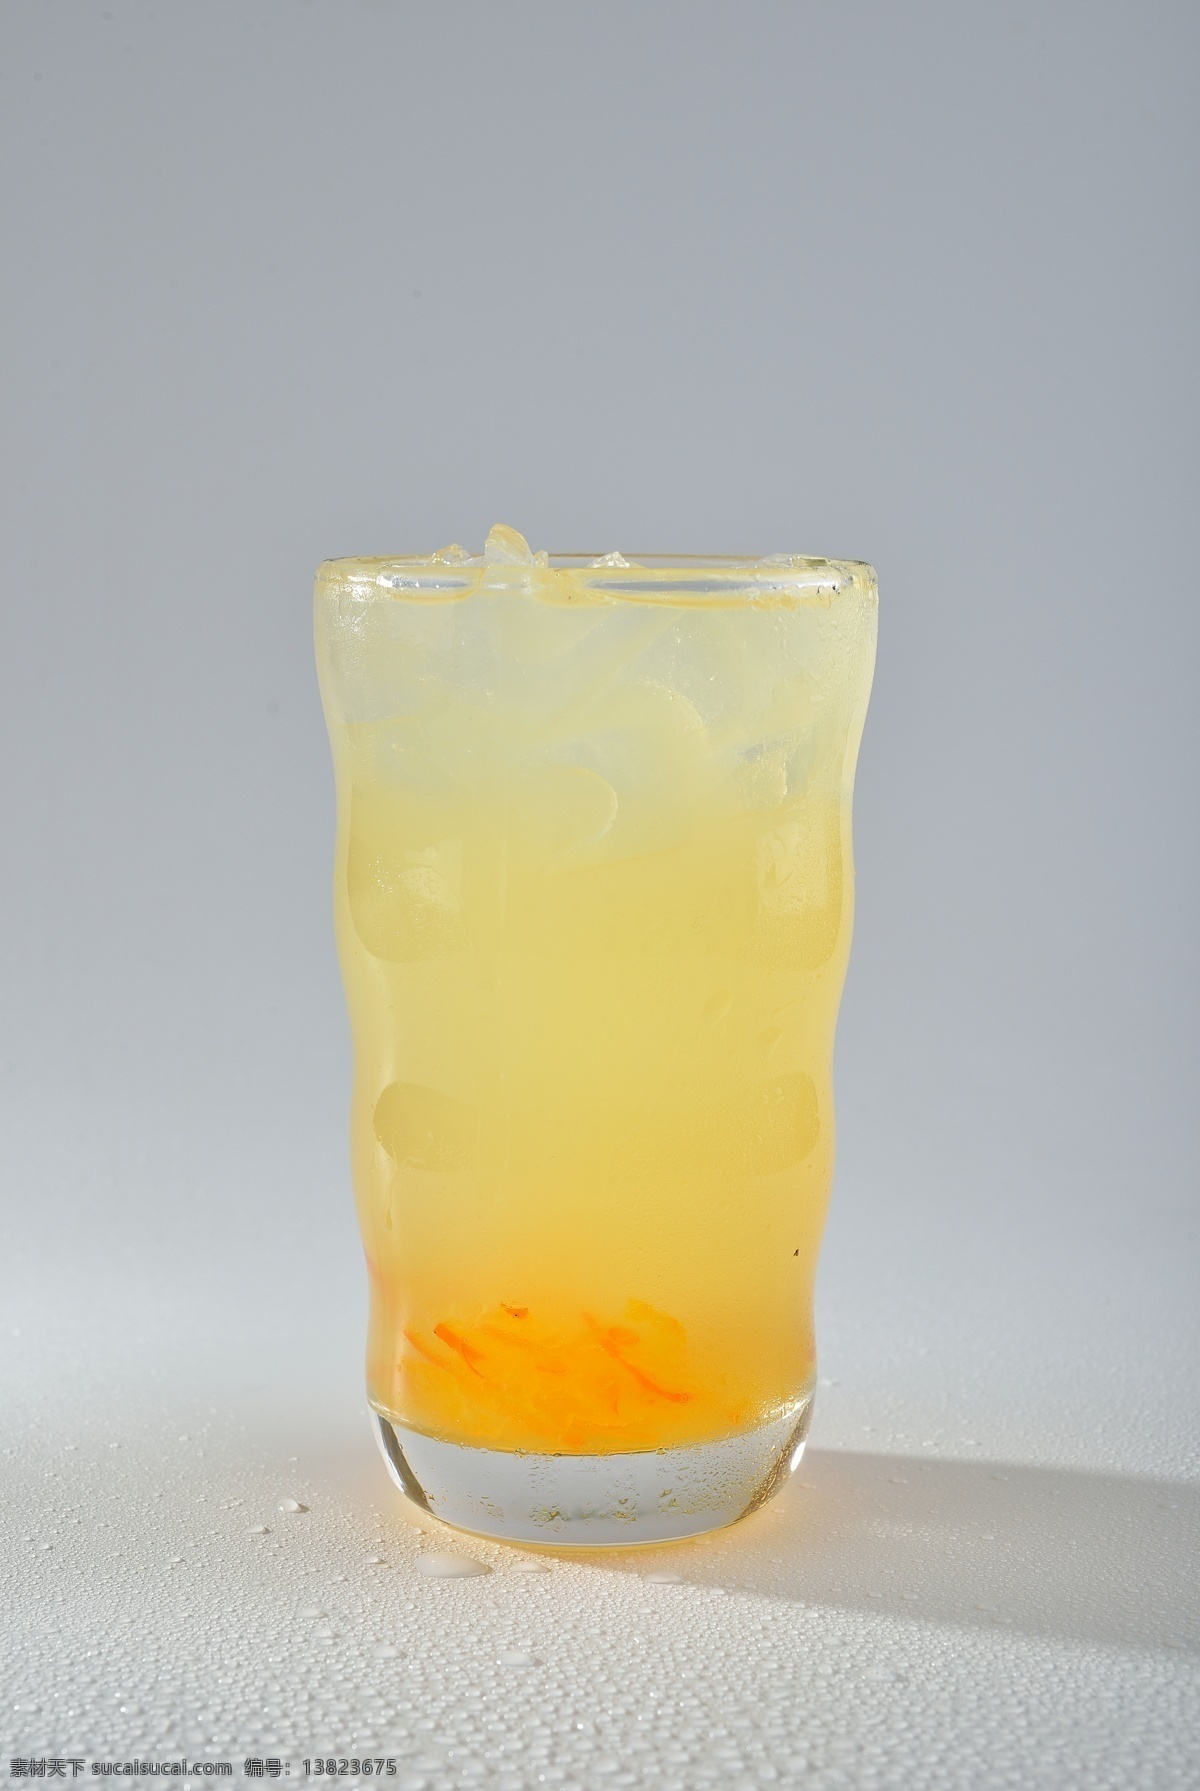 蜂蜜柚子茶 玻璃杯 蜂蜜 柚子 维生素 维c 酸 甜 养颜 美容 柚子皮 餐饮美食 饮料酒水